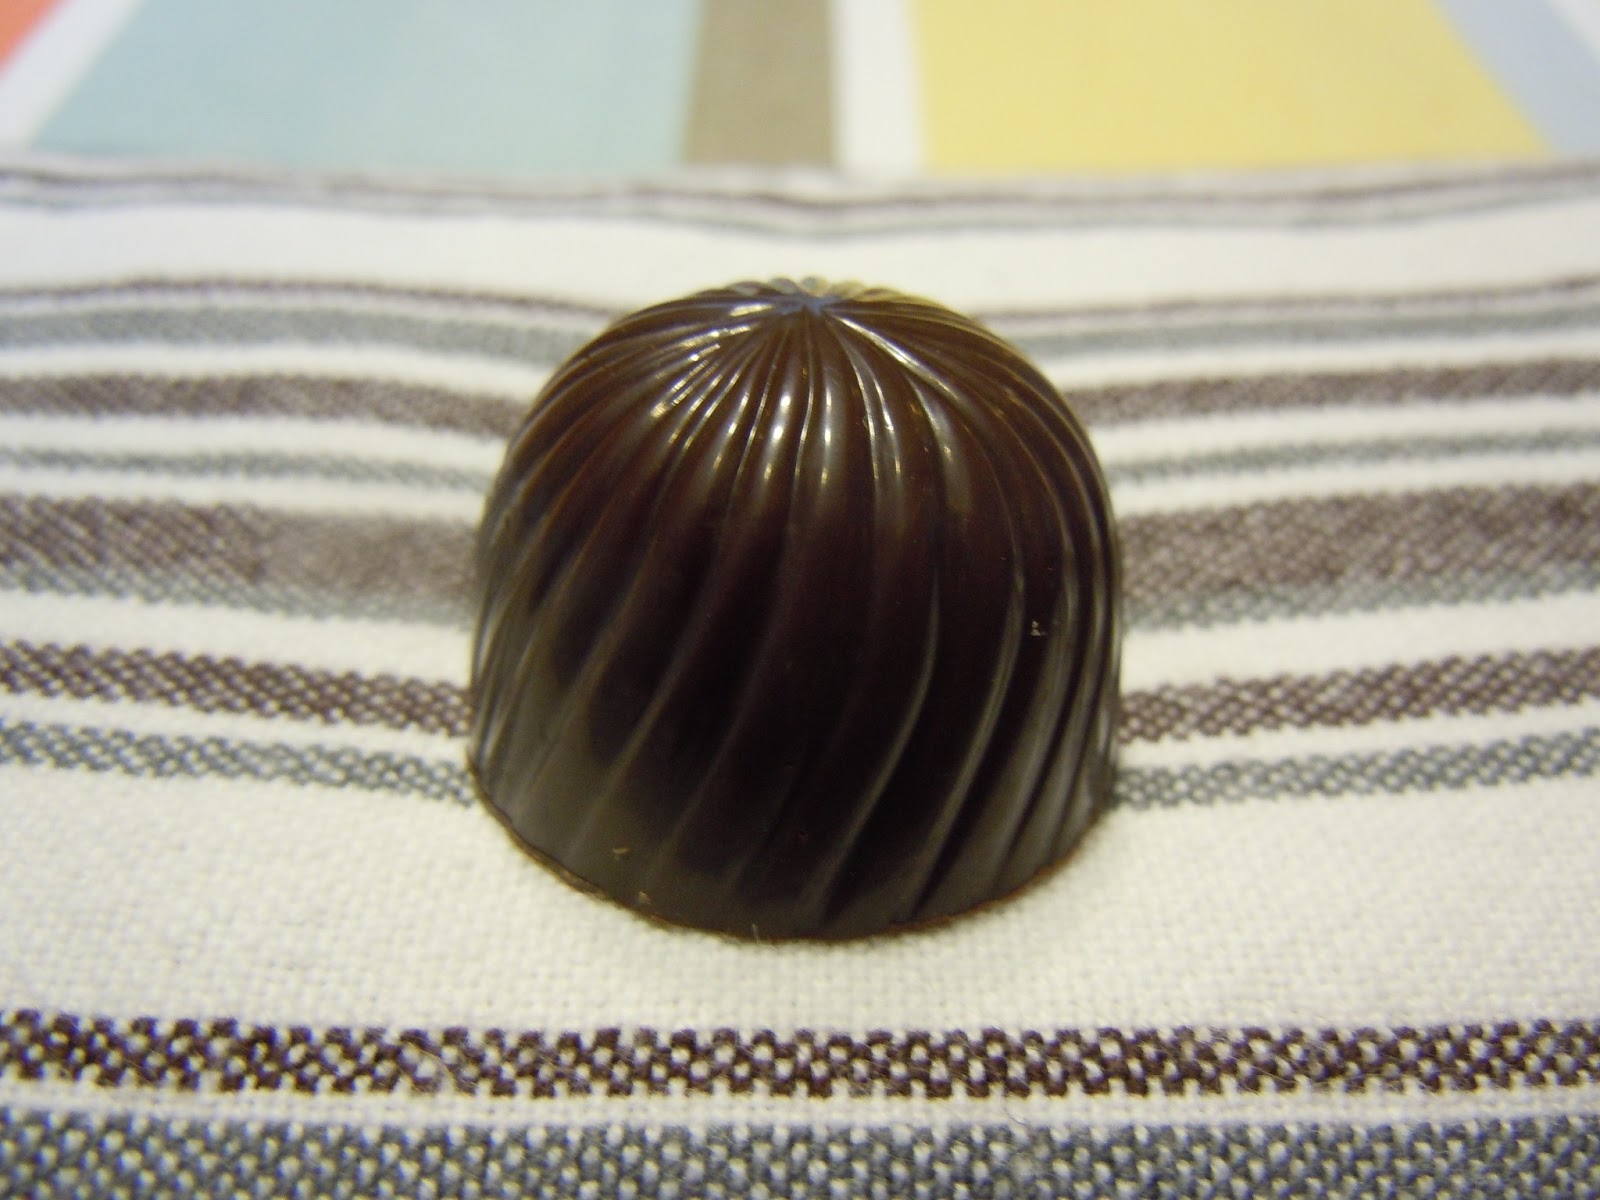 Etat de choc: Praline au chocolat noir fourrée à la crème fraiche vanillée